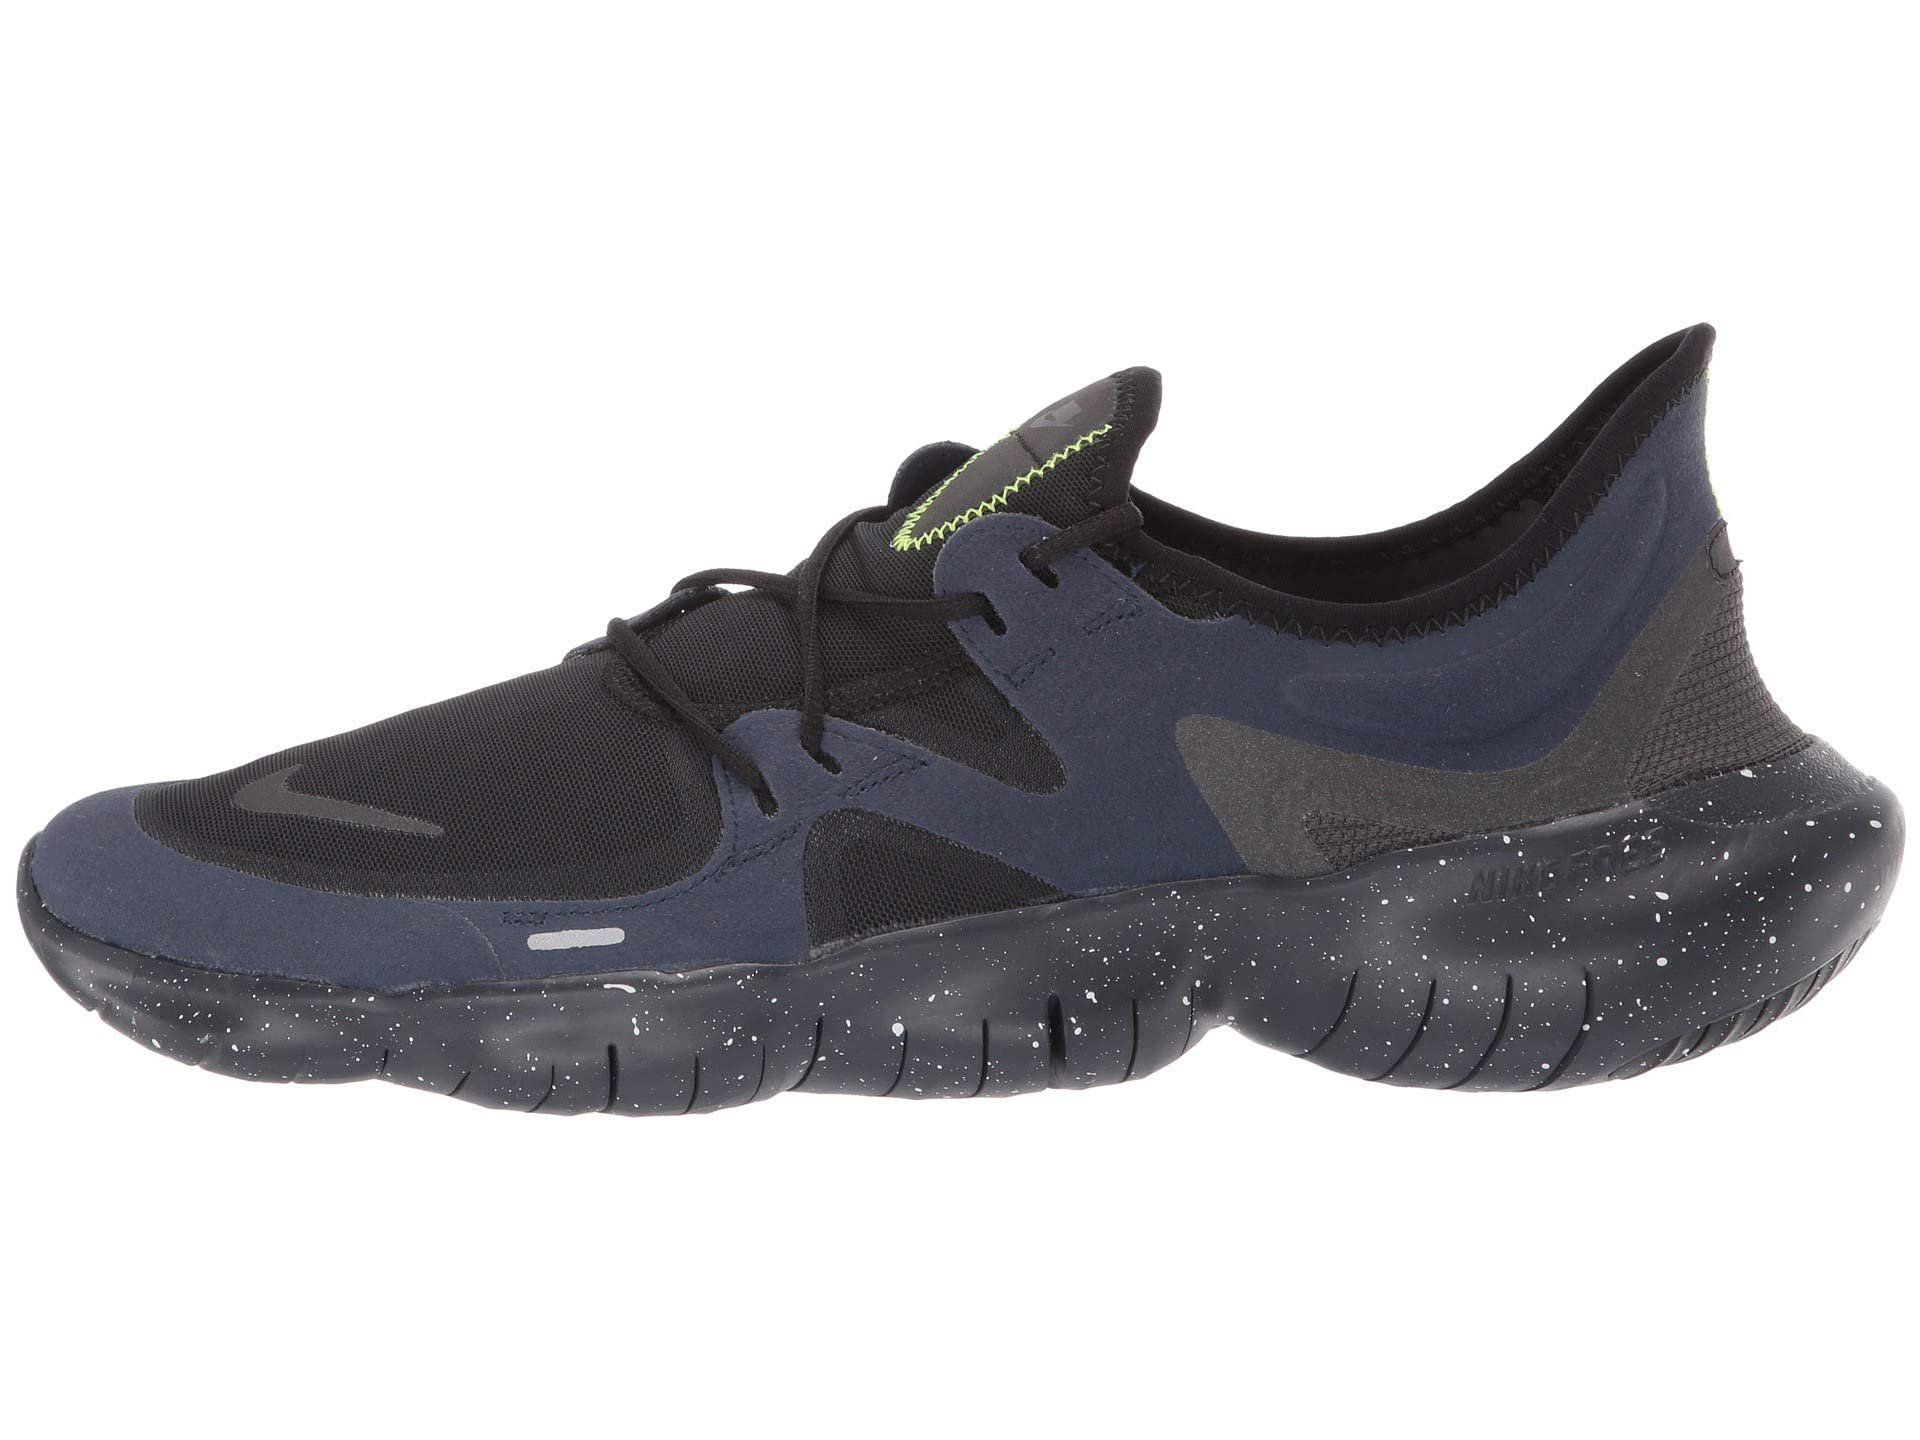 Nike Men's Free RN 5.0 SE Running Shoes - image 2 of 5